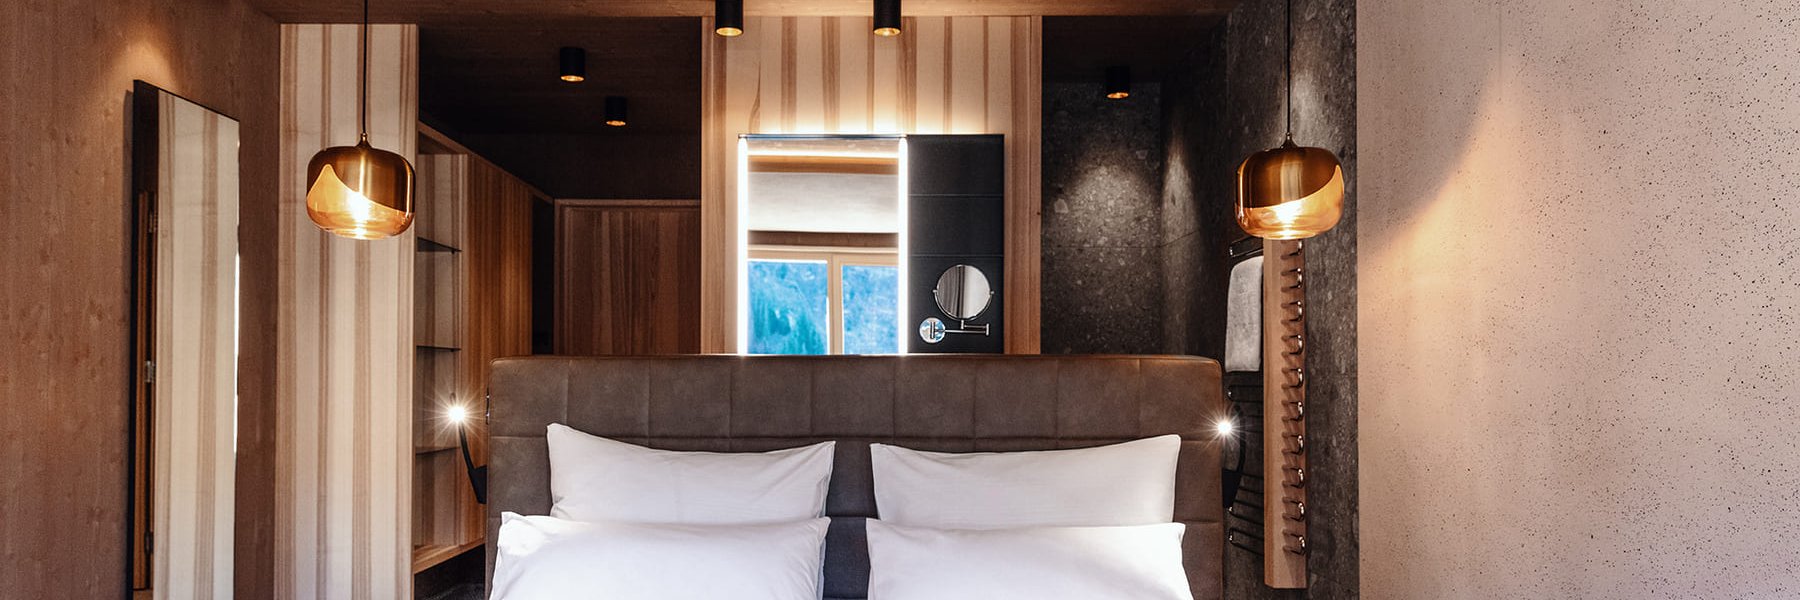 Freistehendes Bett in modern eingerichtetem Hotelzimmer mit offenem Bad